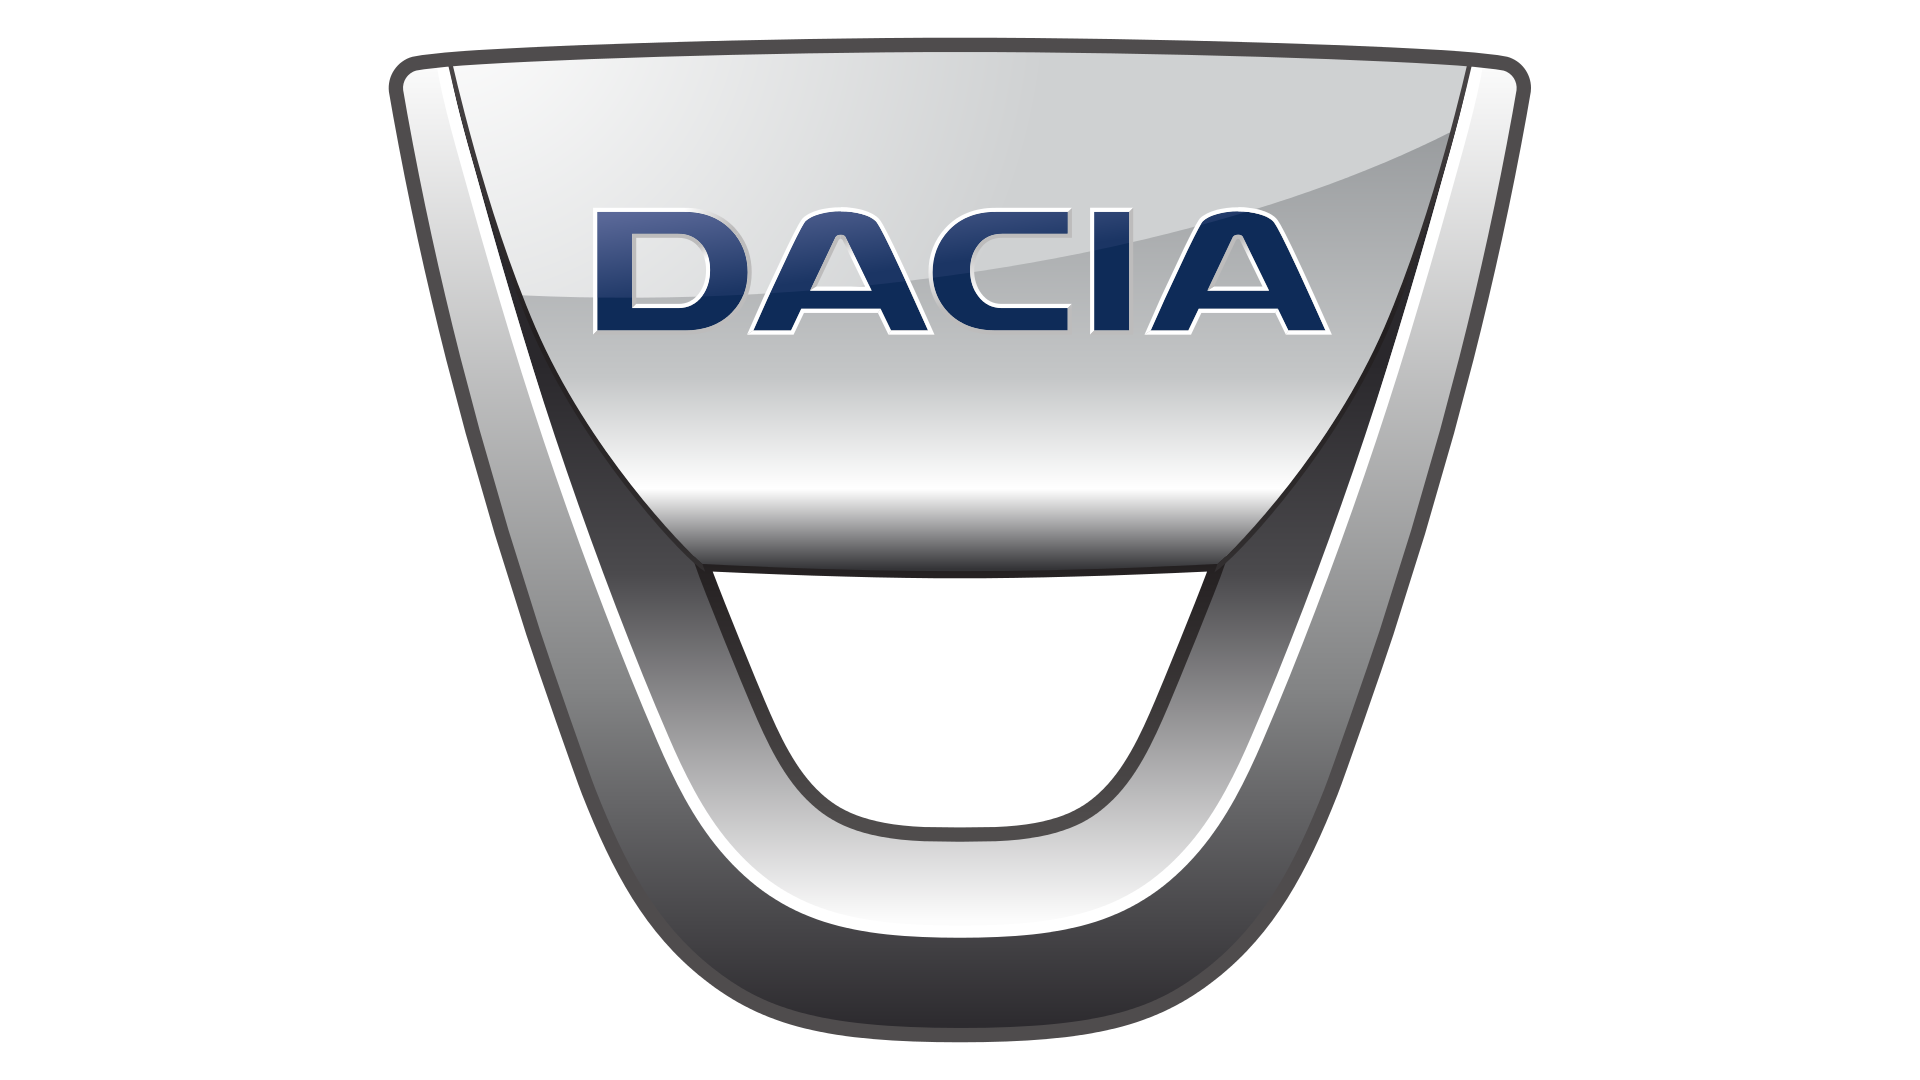 Dacia Eylül 2018 Kampanya ve Avantajlı Fiyat Listesi